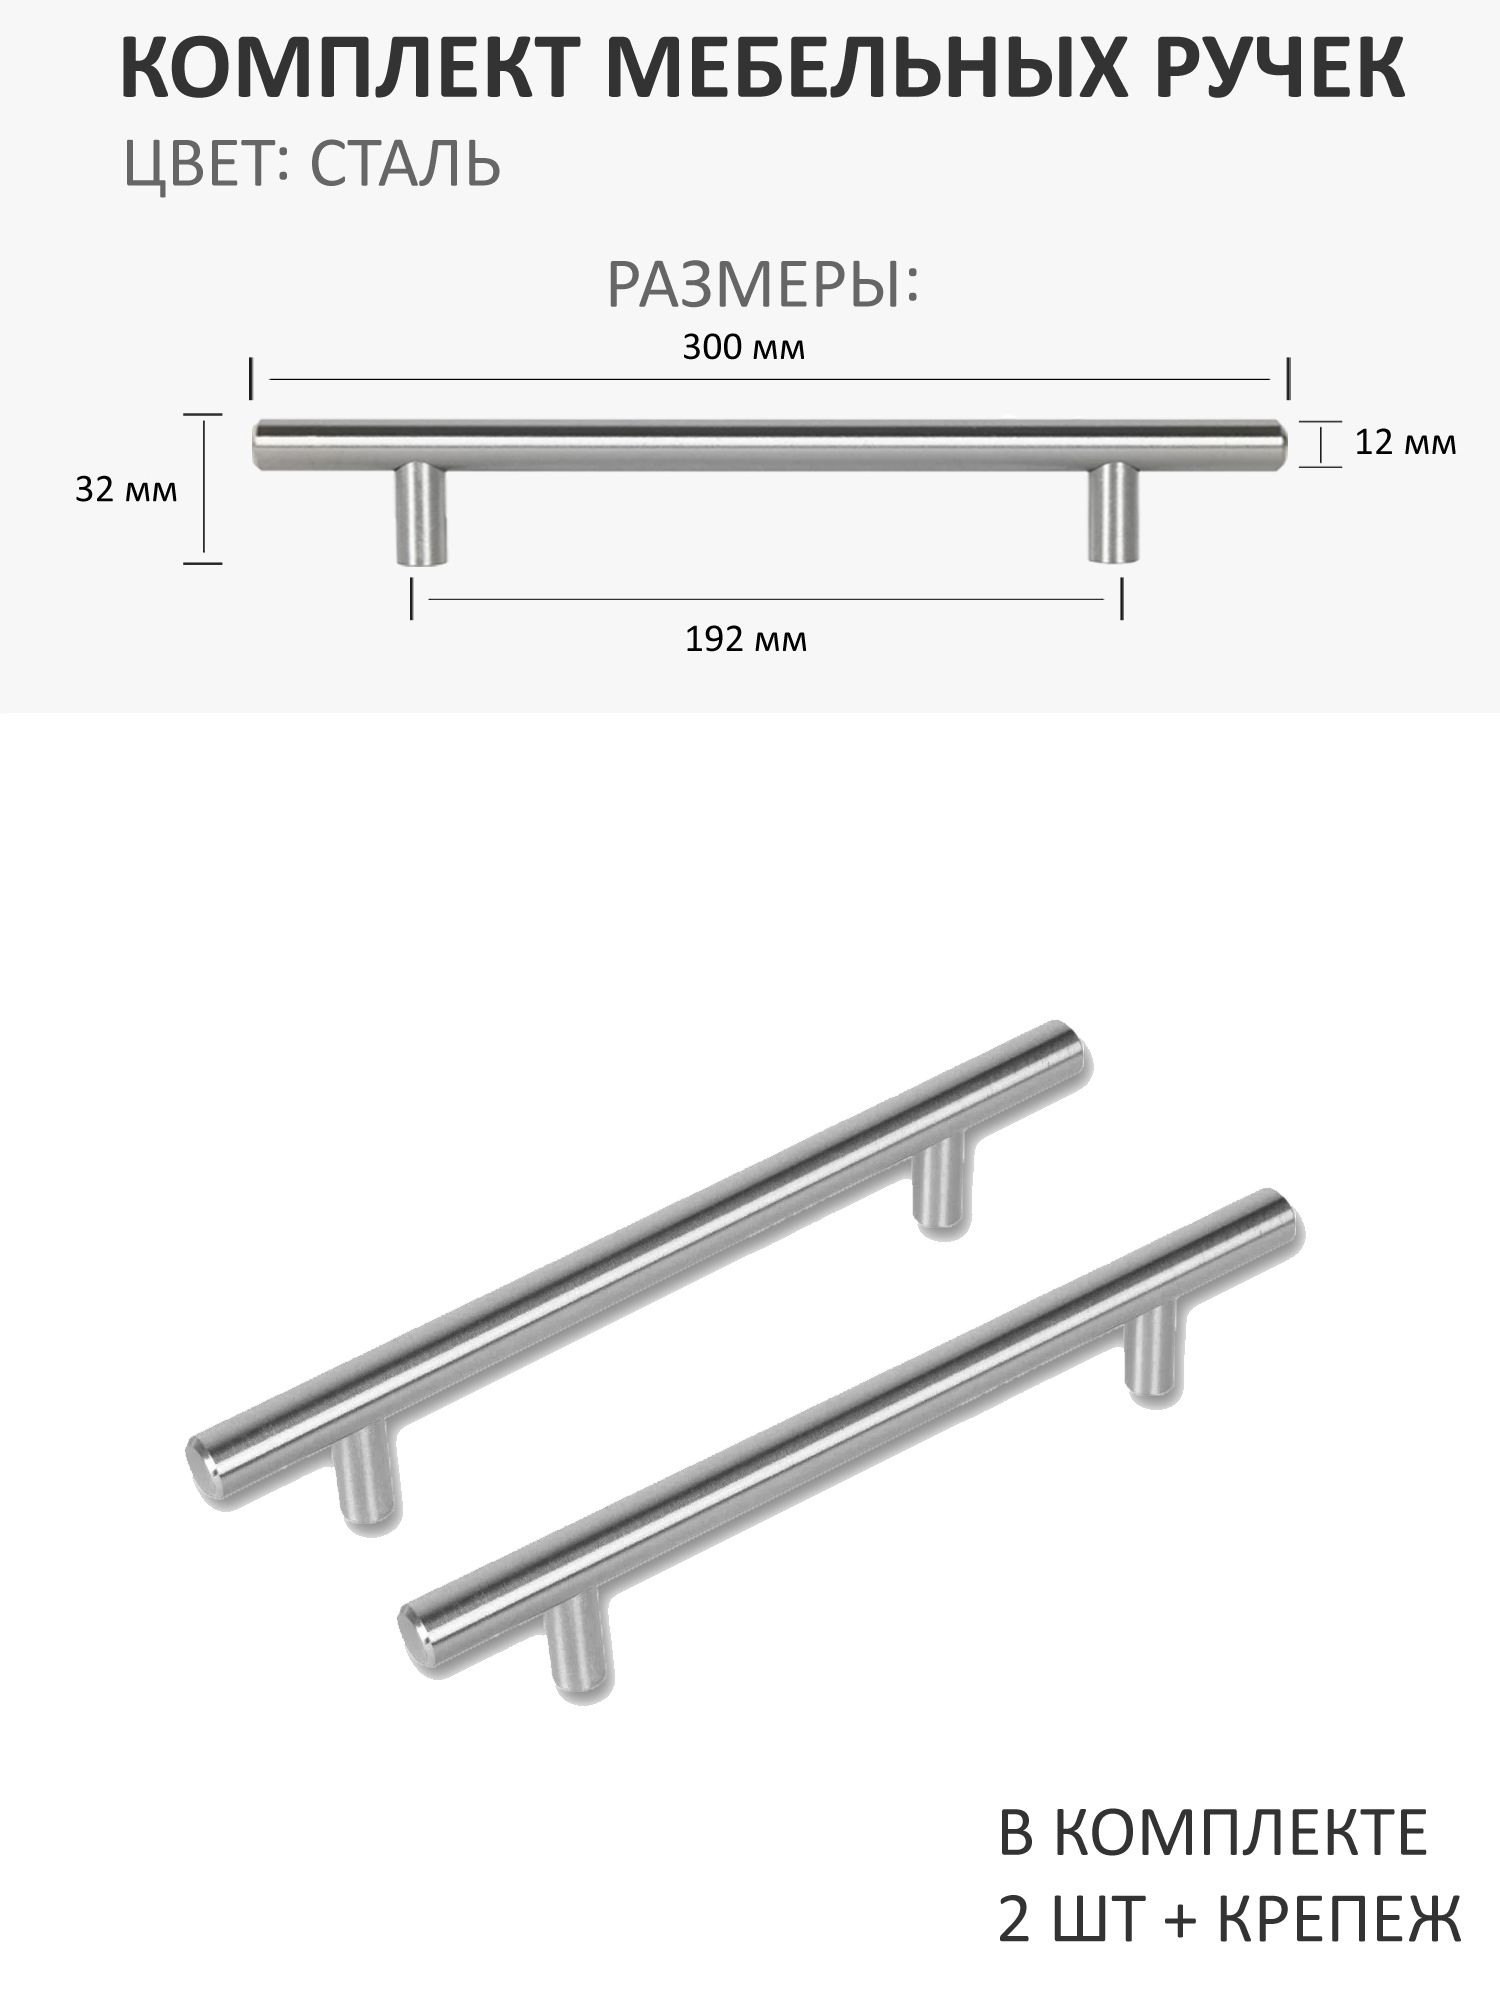 Стандартные размеры мебельных ручек